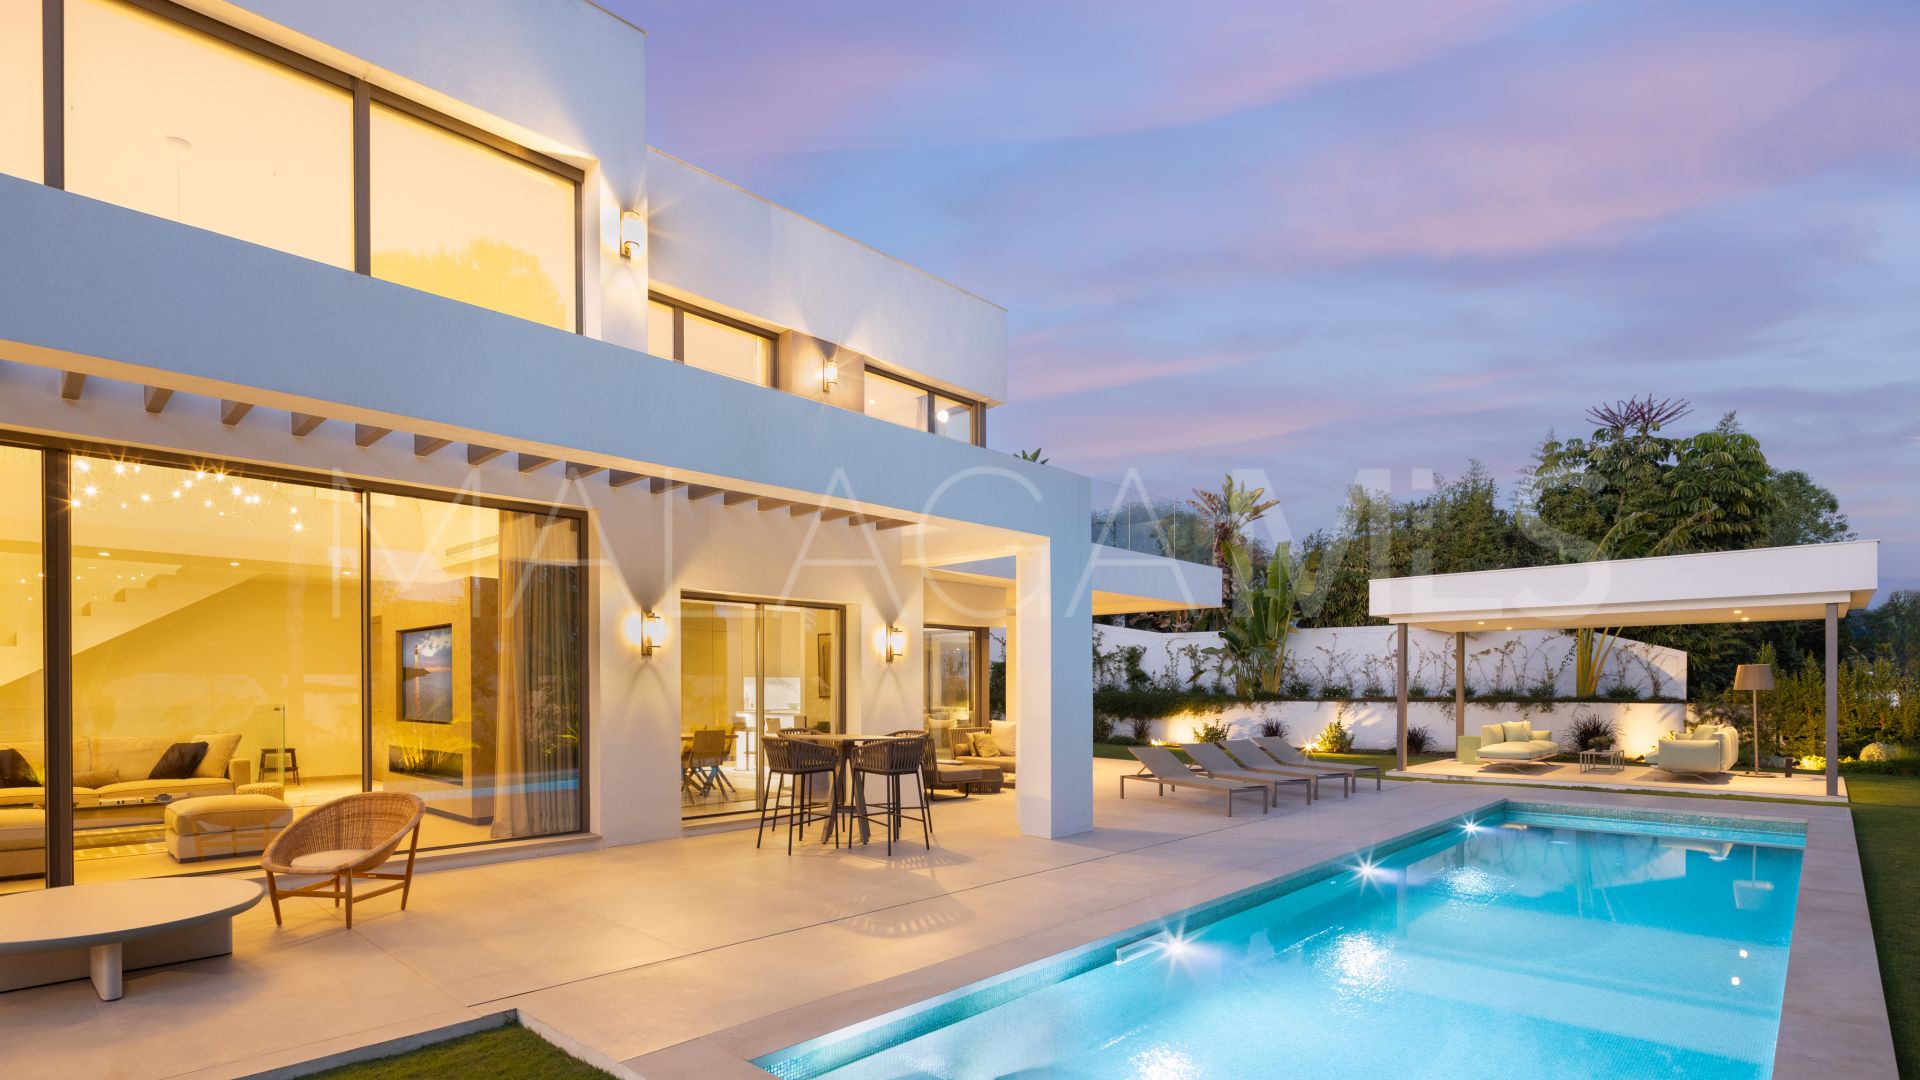 La Carolina, villa with 5 bedrooms for sale